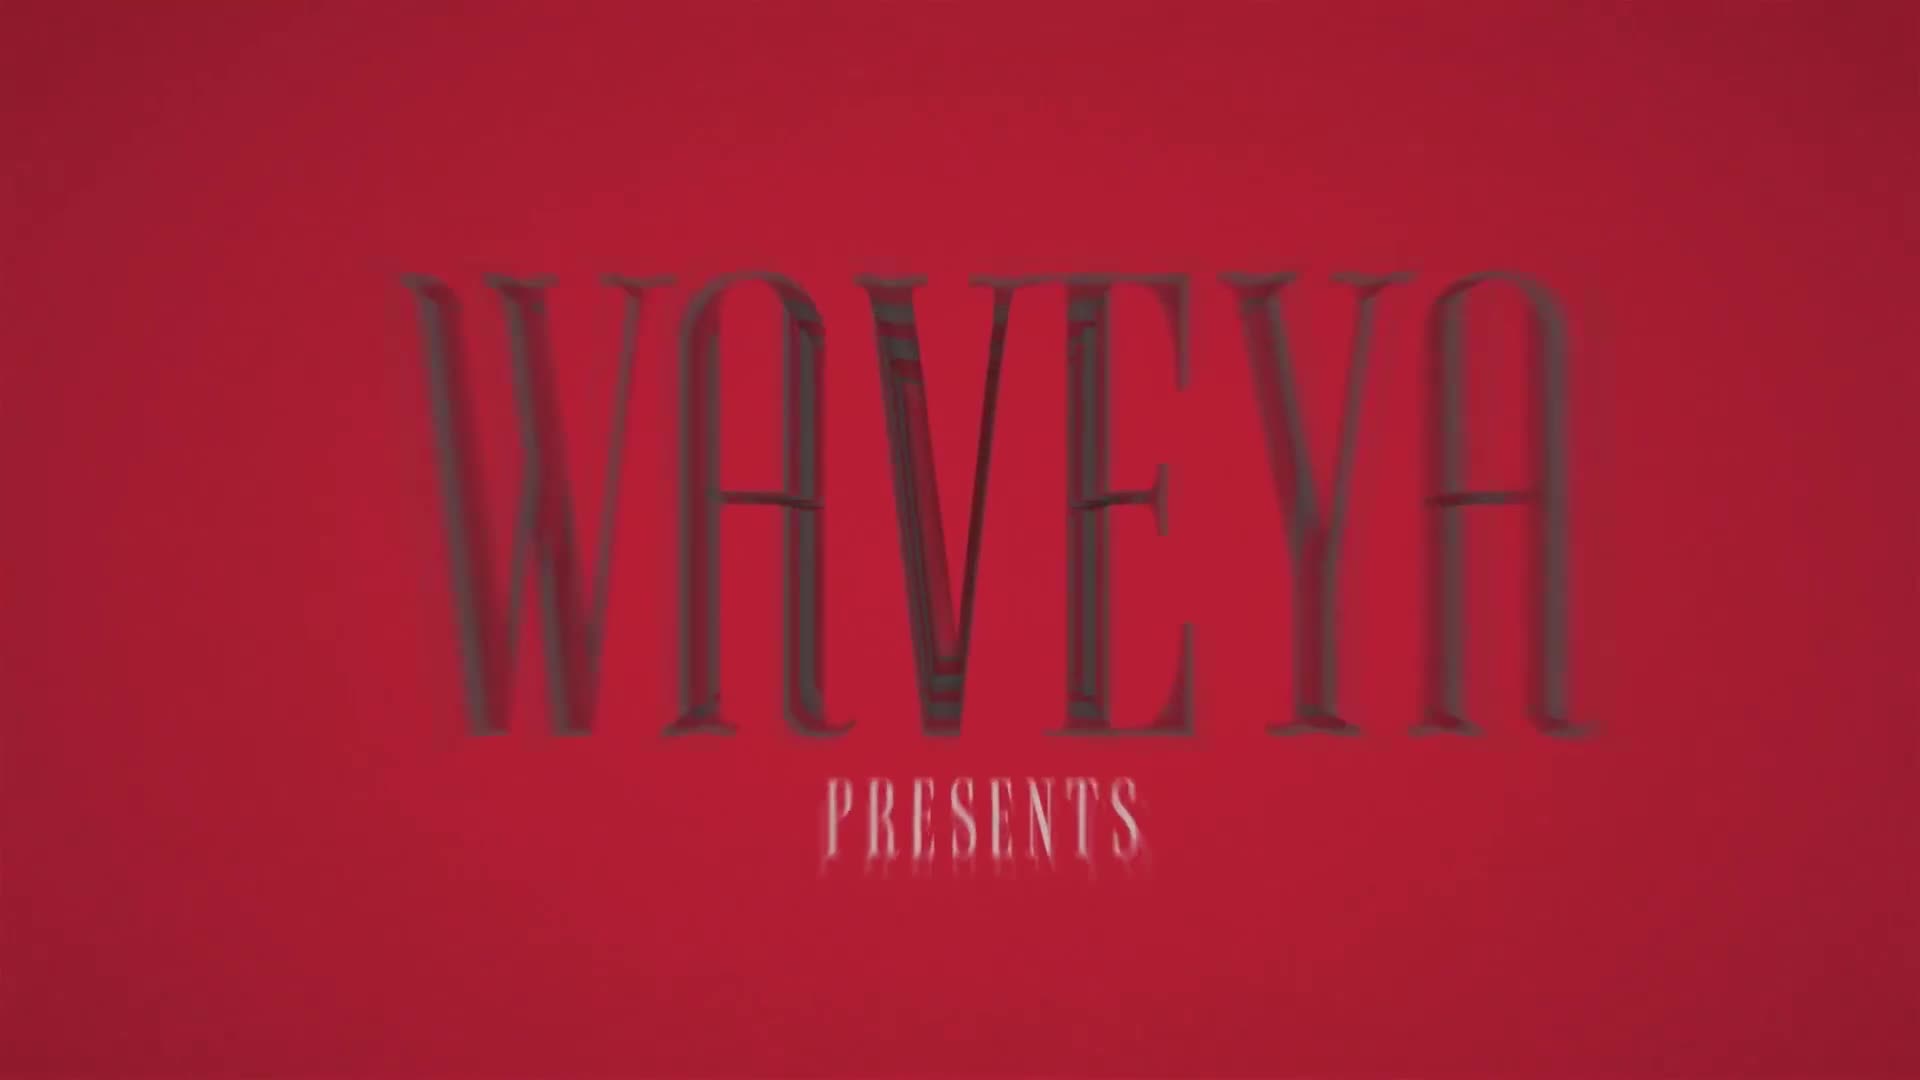 Waveya HYUNA RED (빨개요) kpop cover dance